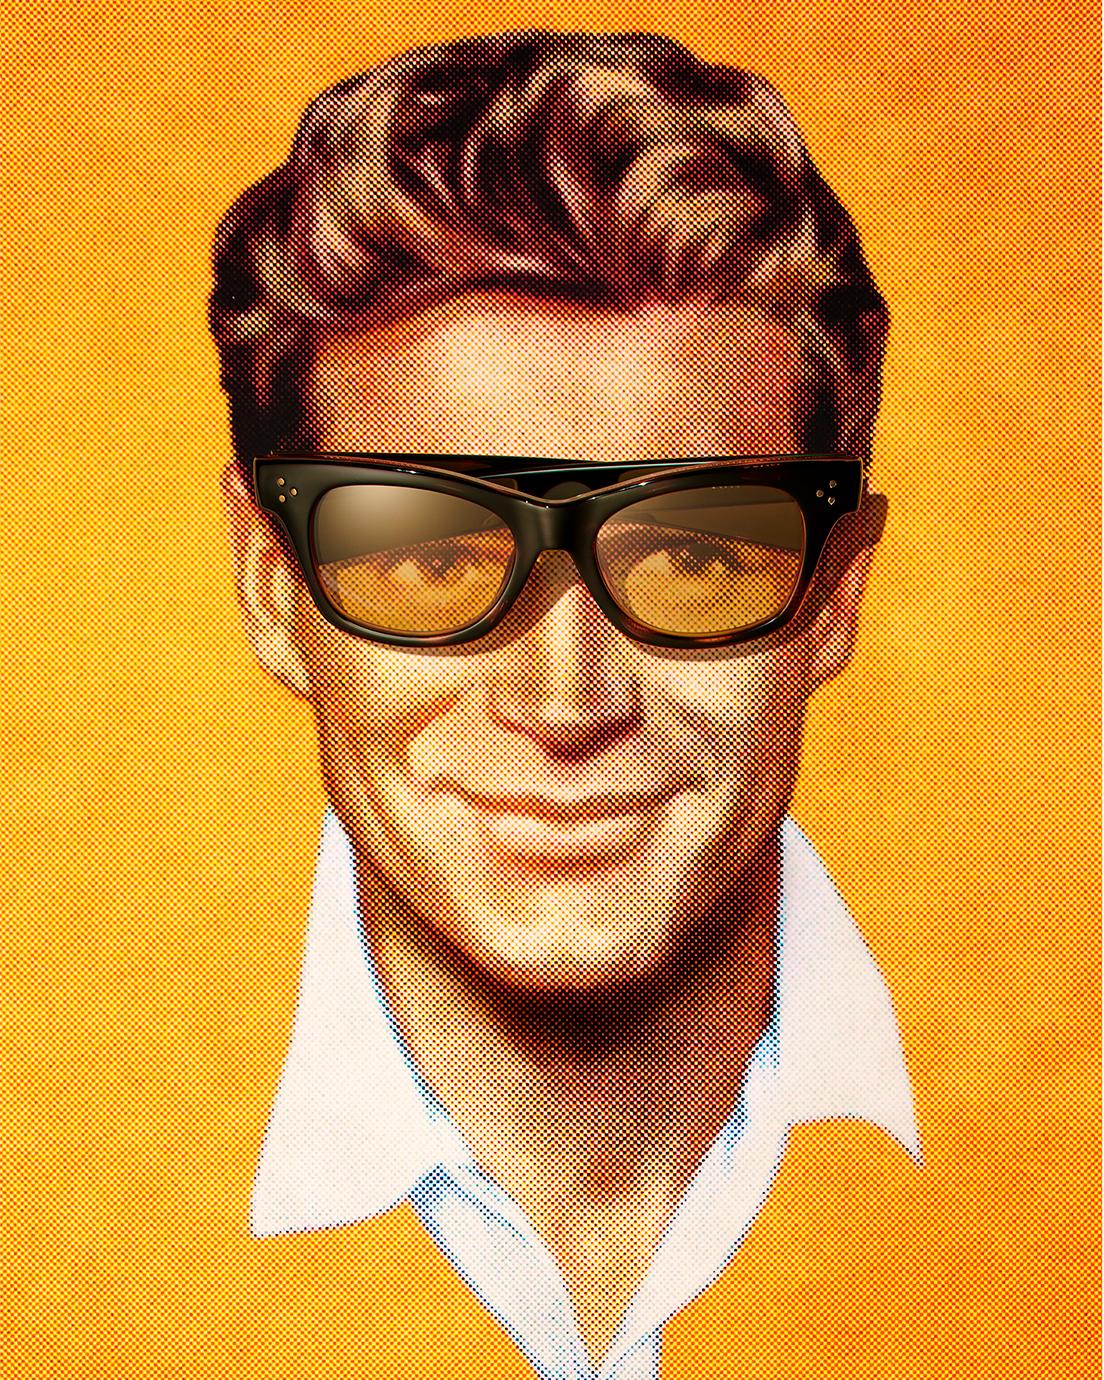 NIGO®の原点である1950年代のアメリカを彷彿とさせる《ローンチコレクション》ビジュアルイメージ。サングラスは《ジョン》8,800円。